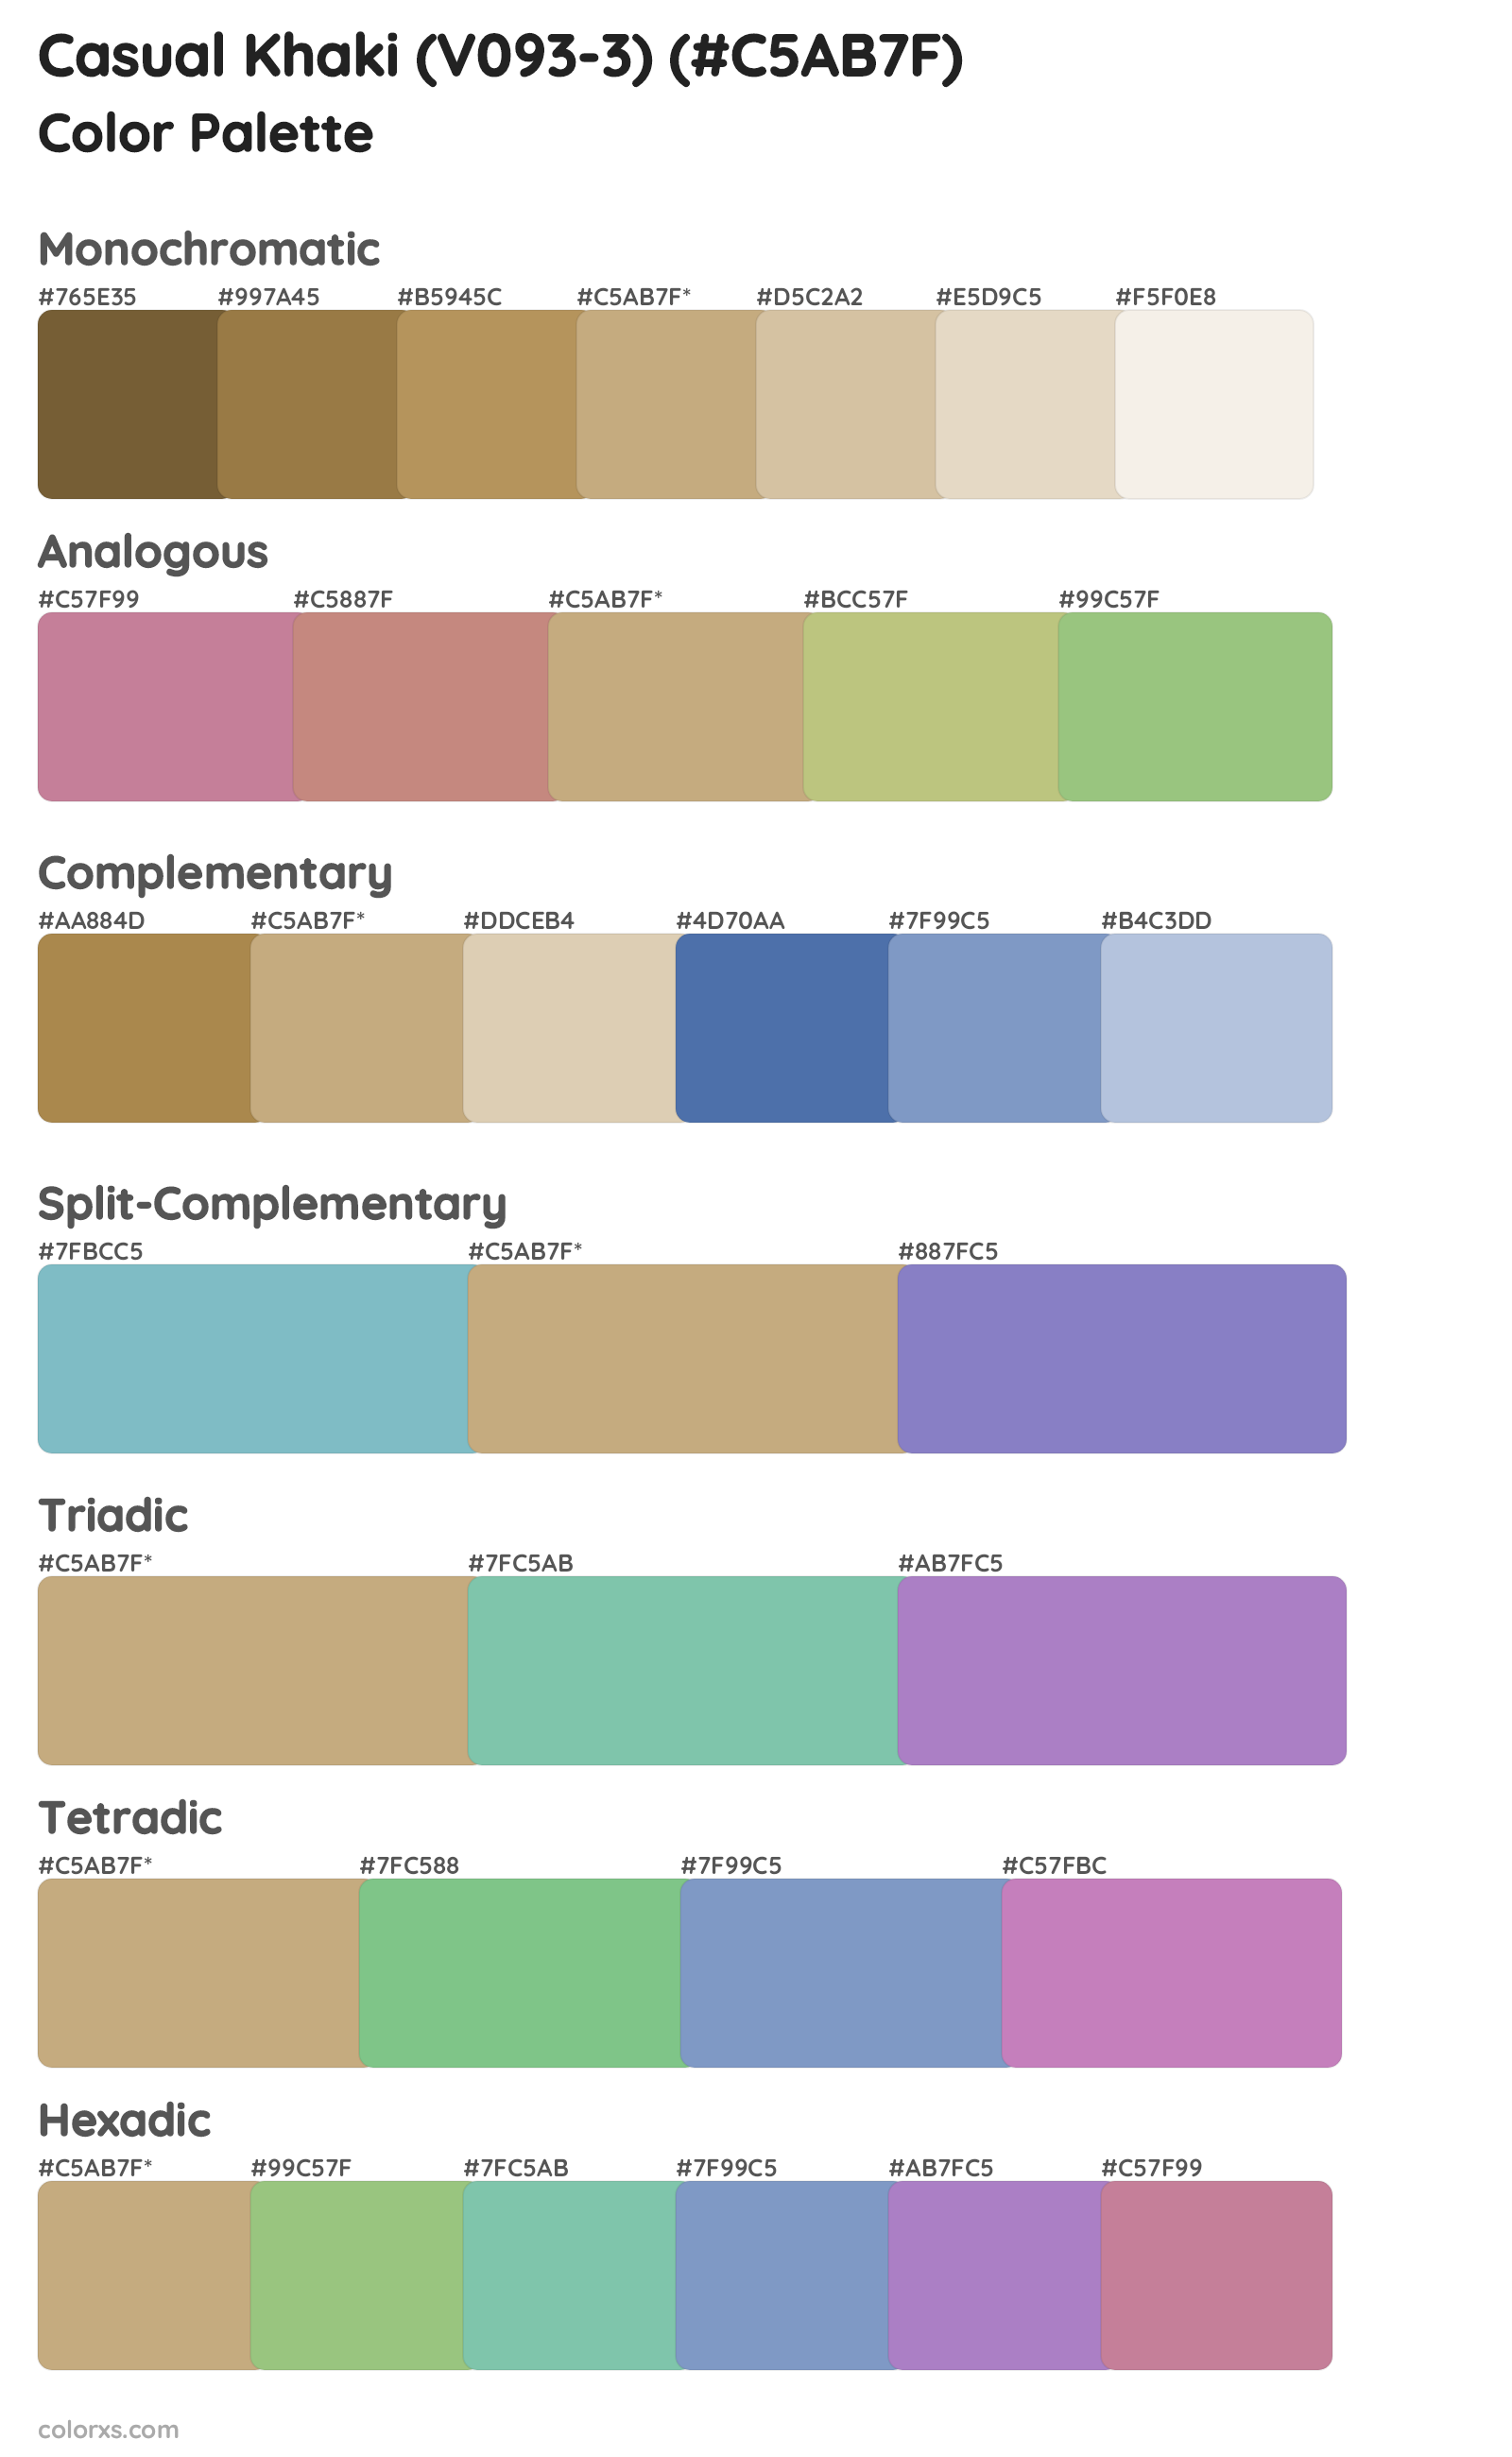 Casual Khaki (V093-3) Color Scheme Palettes